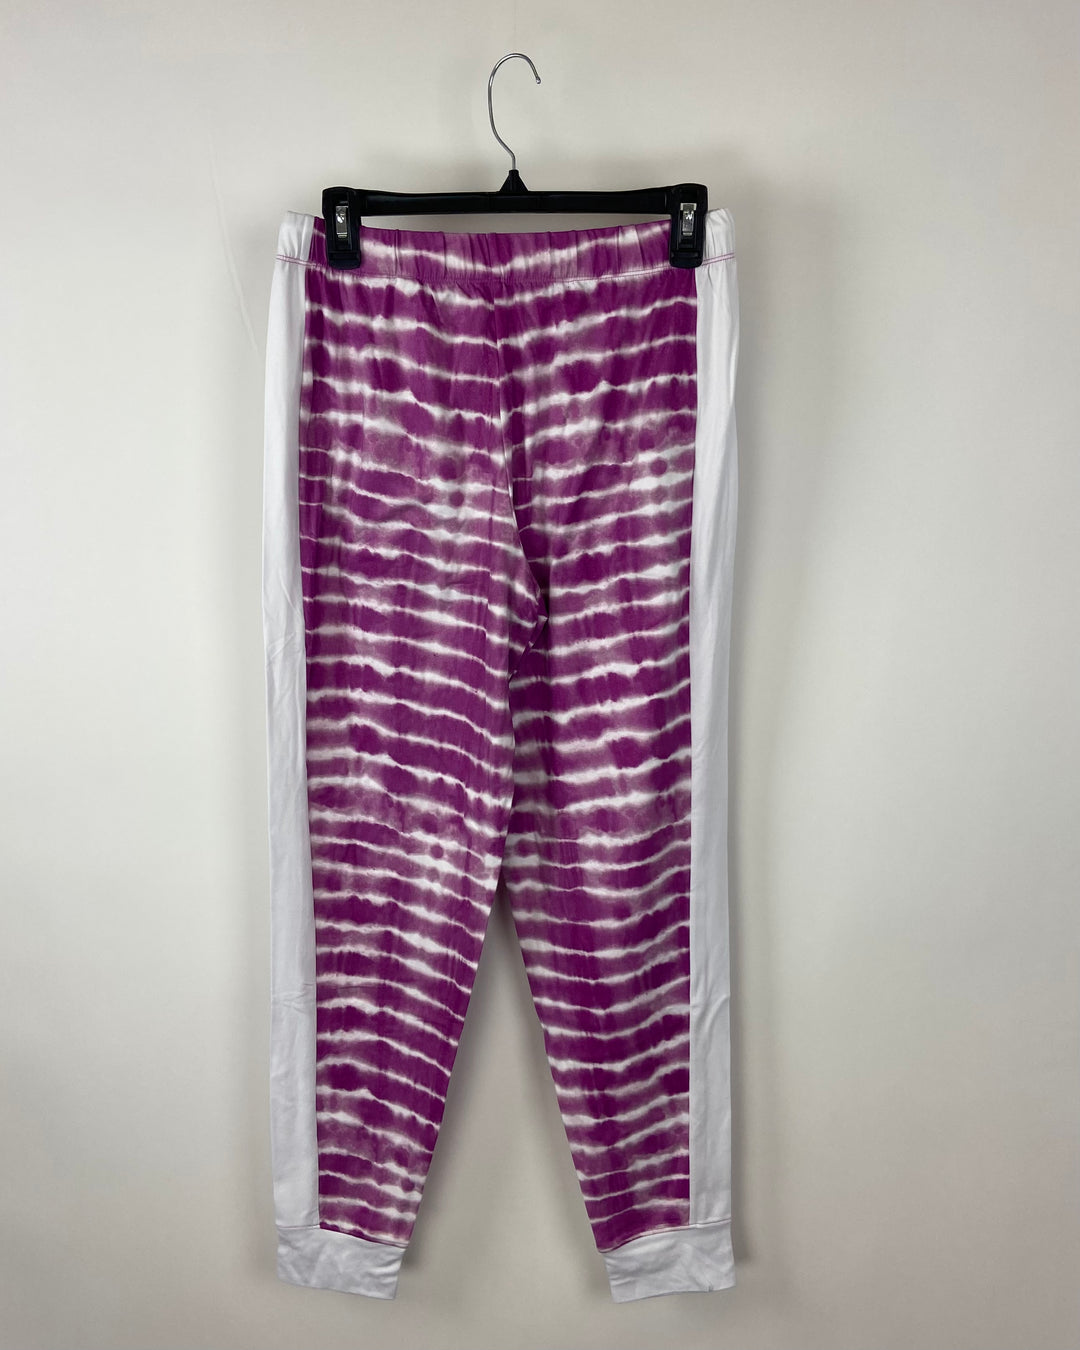 Purple Tie Dye Pajama Pants - Size 6/8